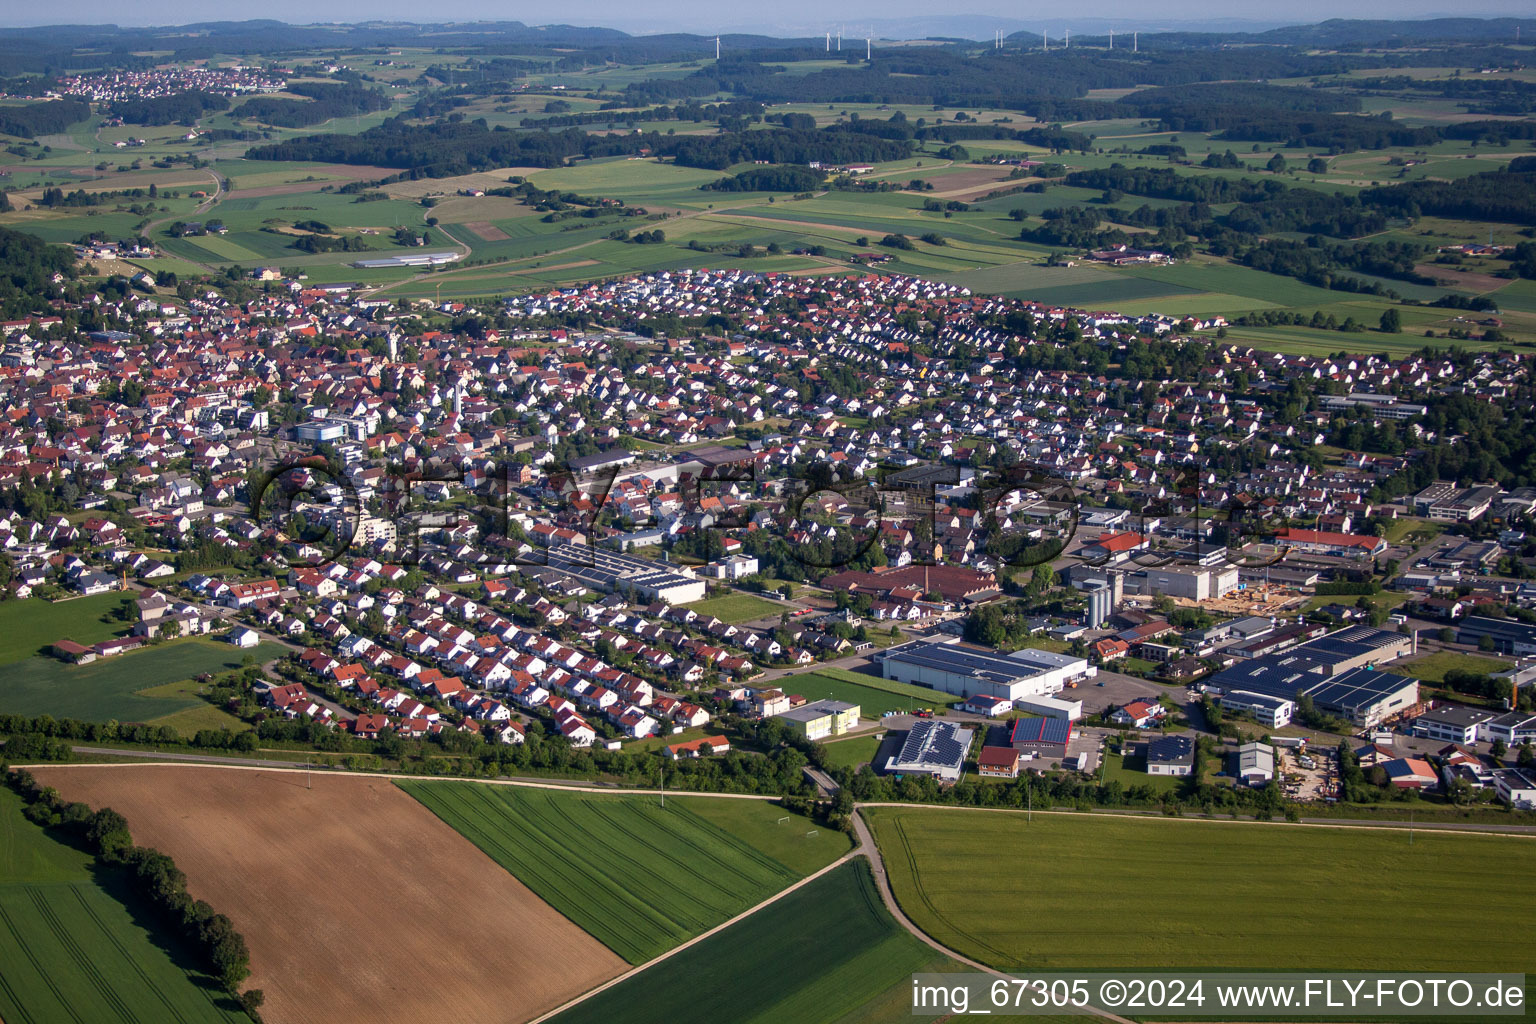 Vue aérienne de Champs agricoles et surfaces utilisables à Laichingen dans le département Bade-Wurtemberg, Allemagne